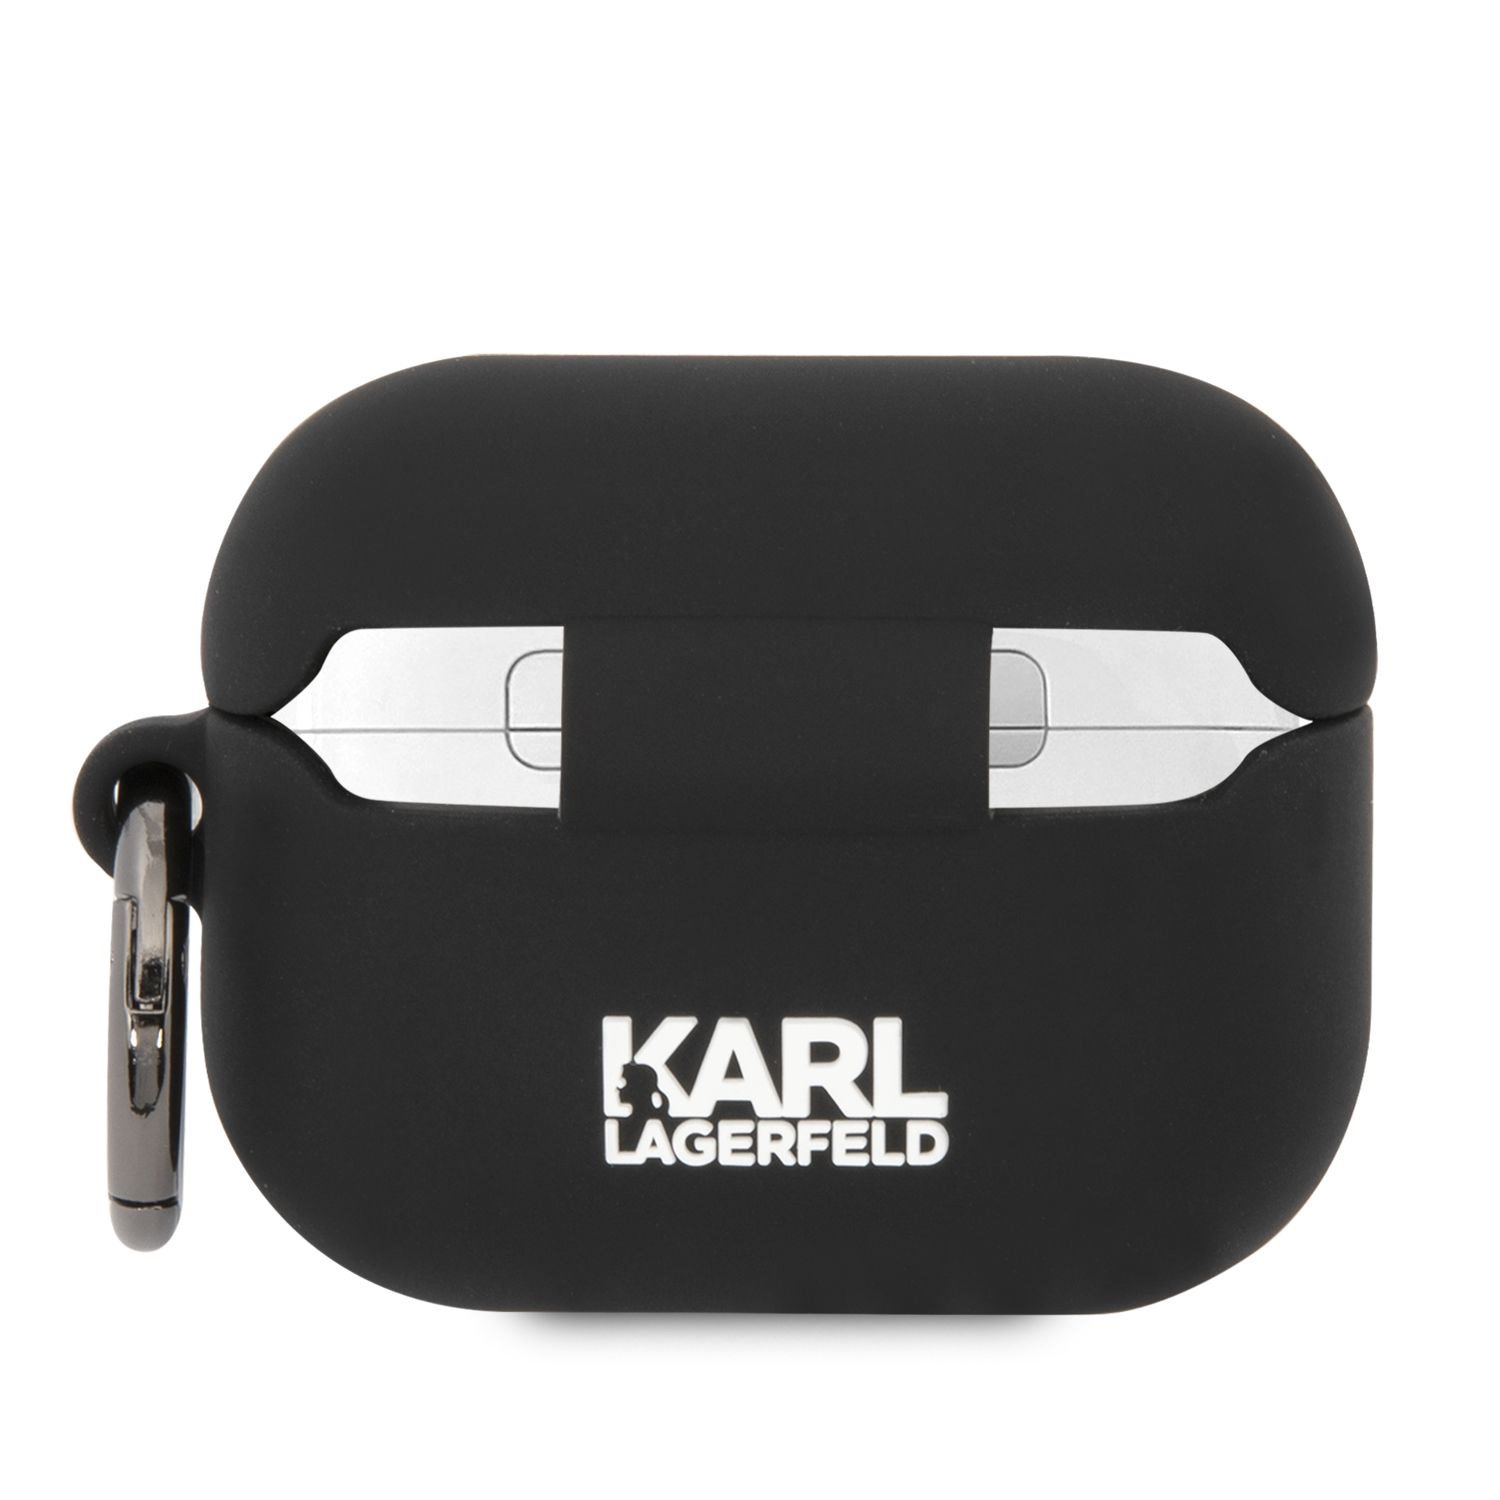 Silikonové pouzdro Karl Lagerfeld and Choupette pro Airpods Pro, černá